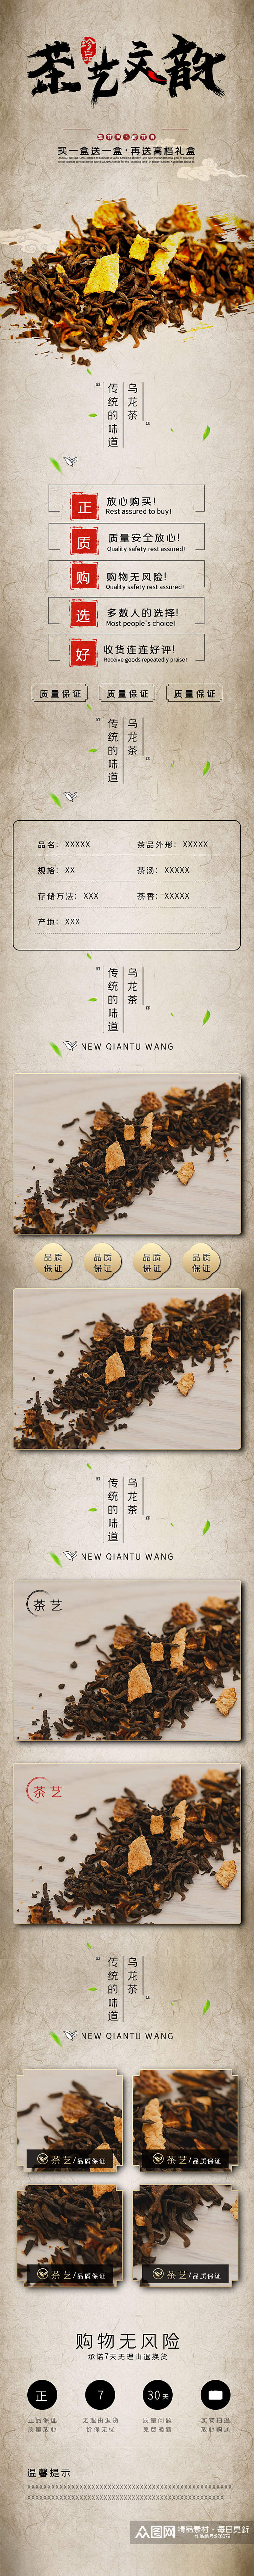 黑茶茶叶皮革暖色食品详情页素材